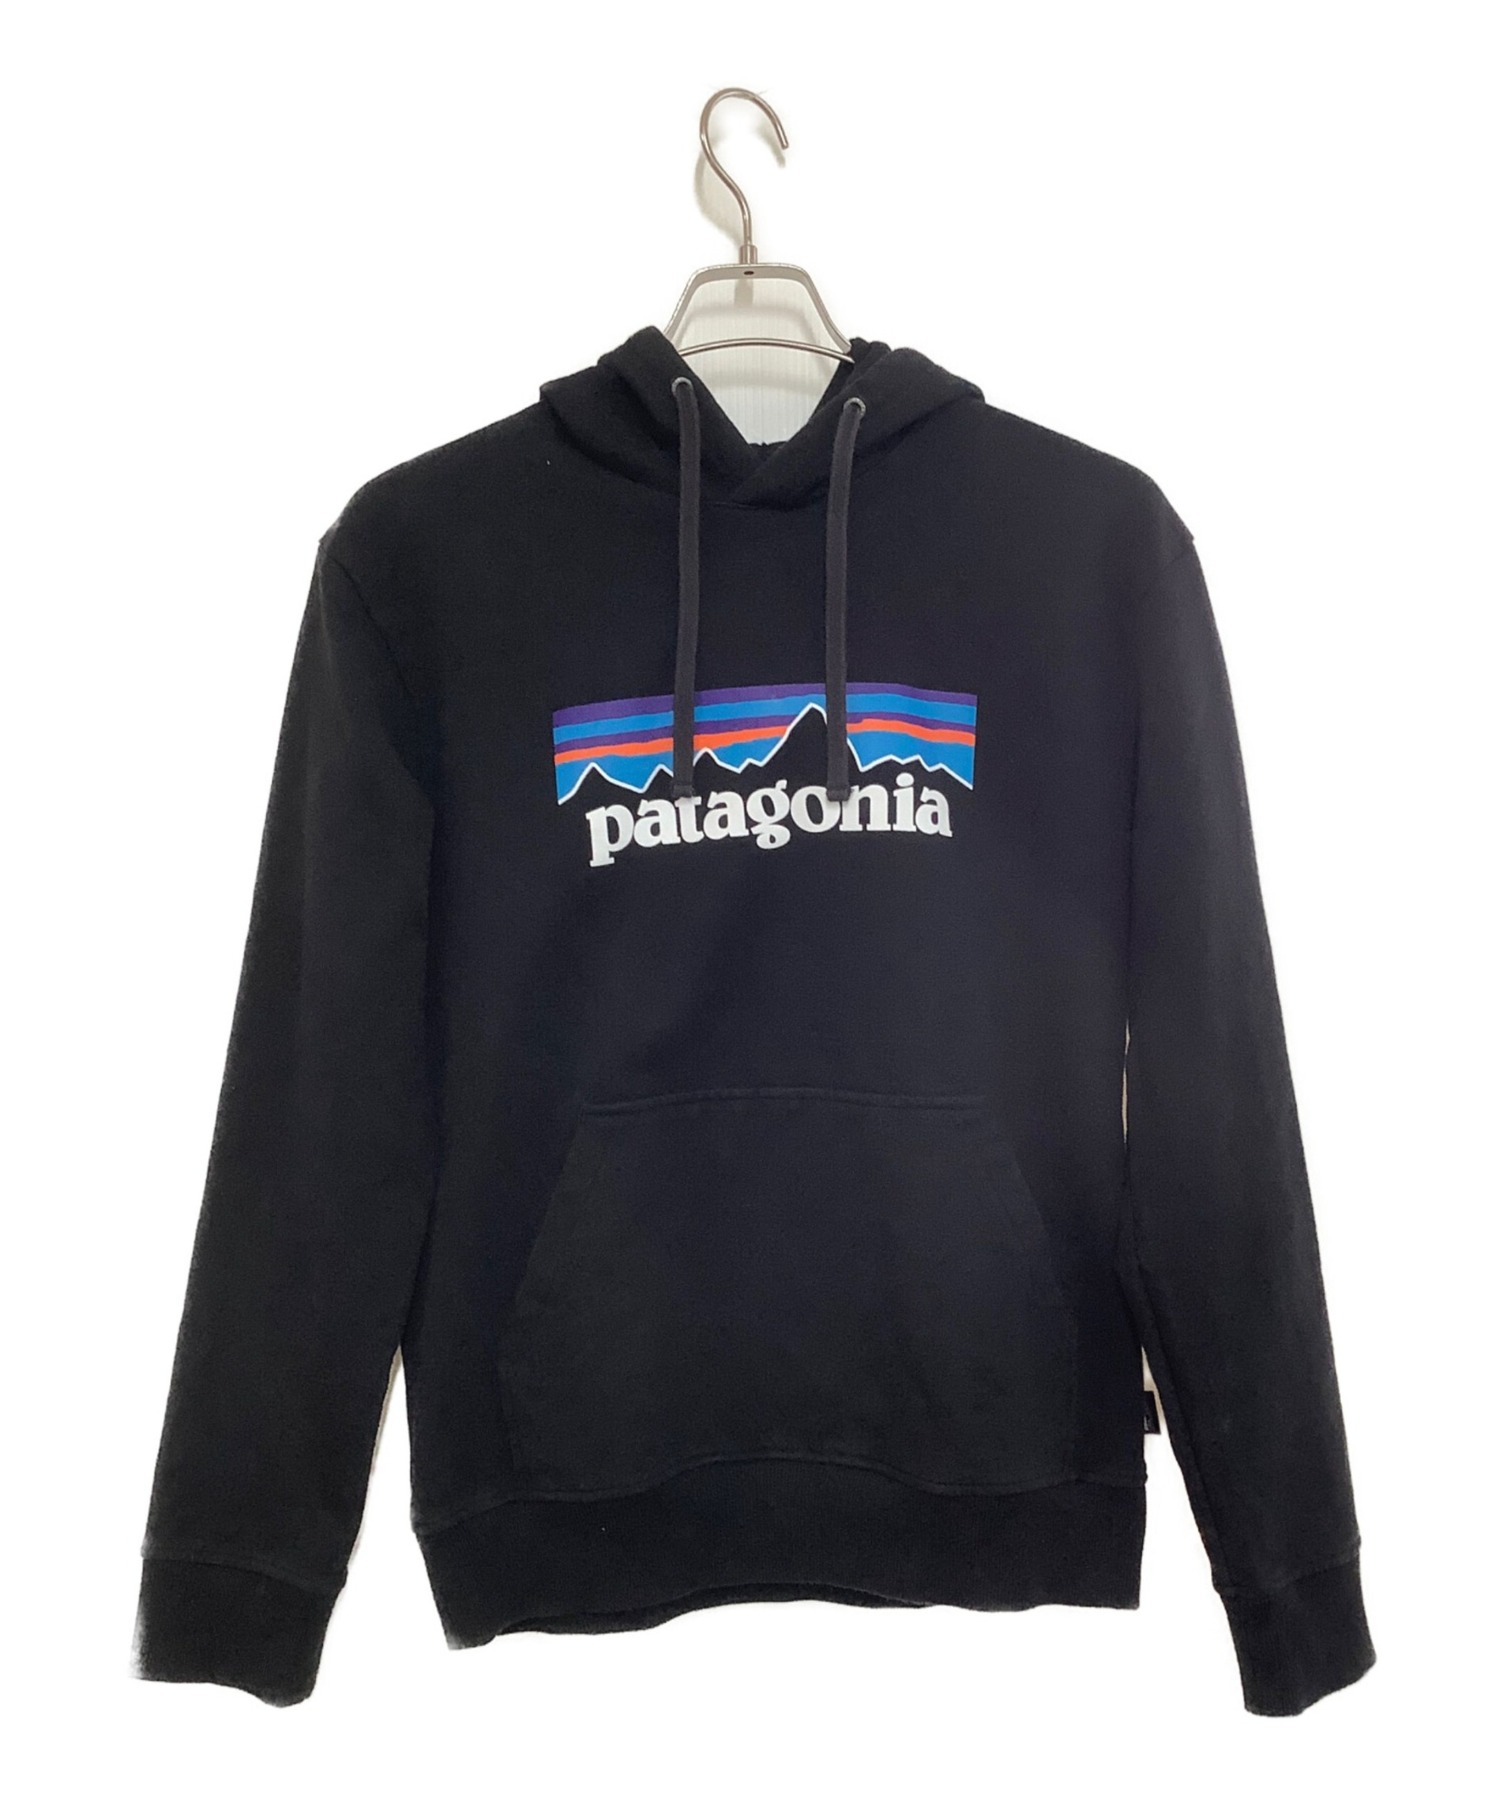 Patagonia (パタゴニア) パーカー ブラック サイズ:S